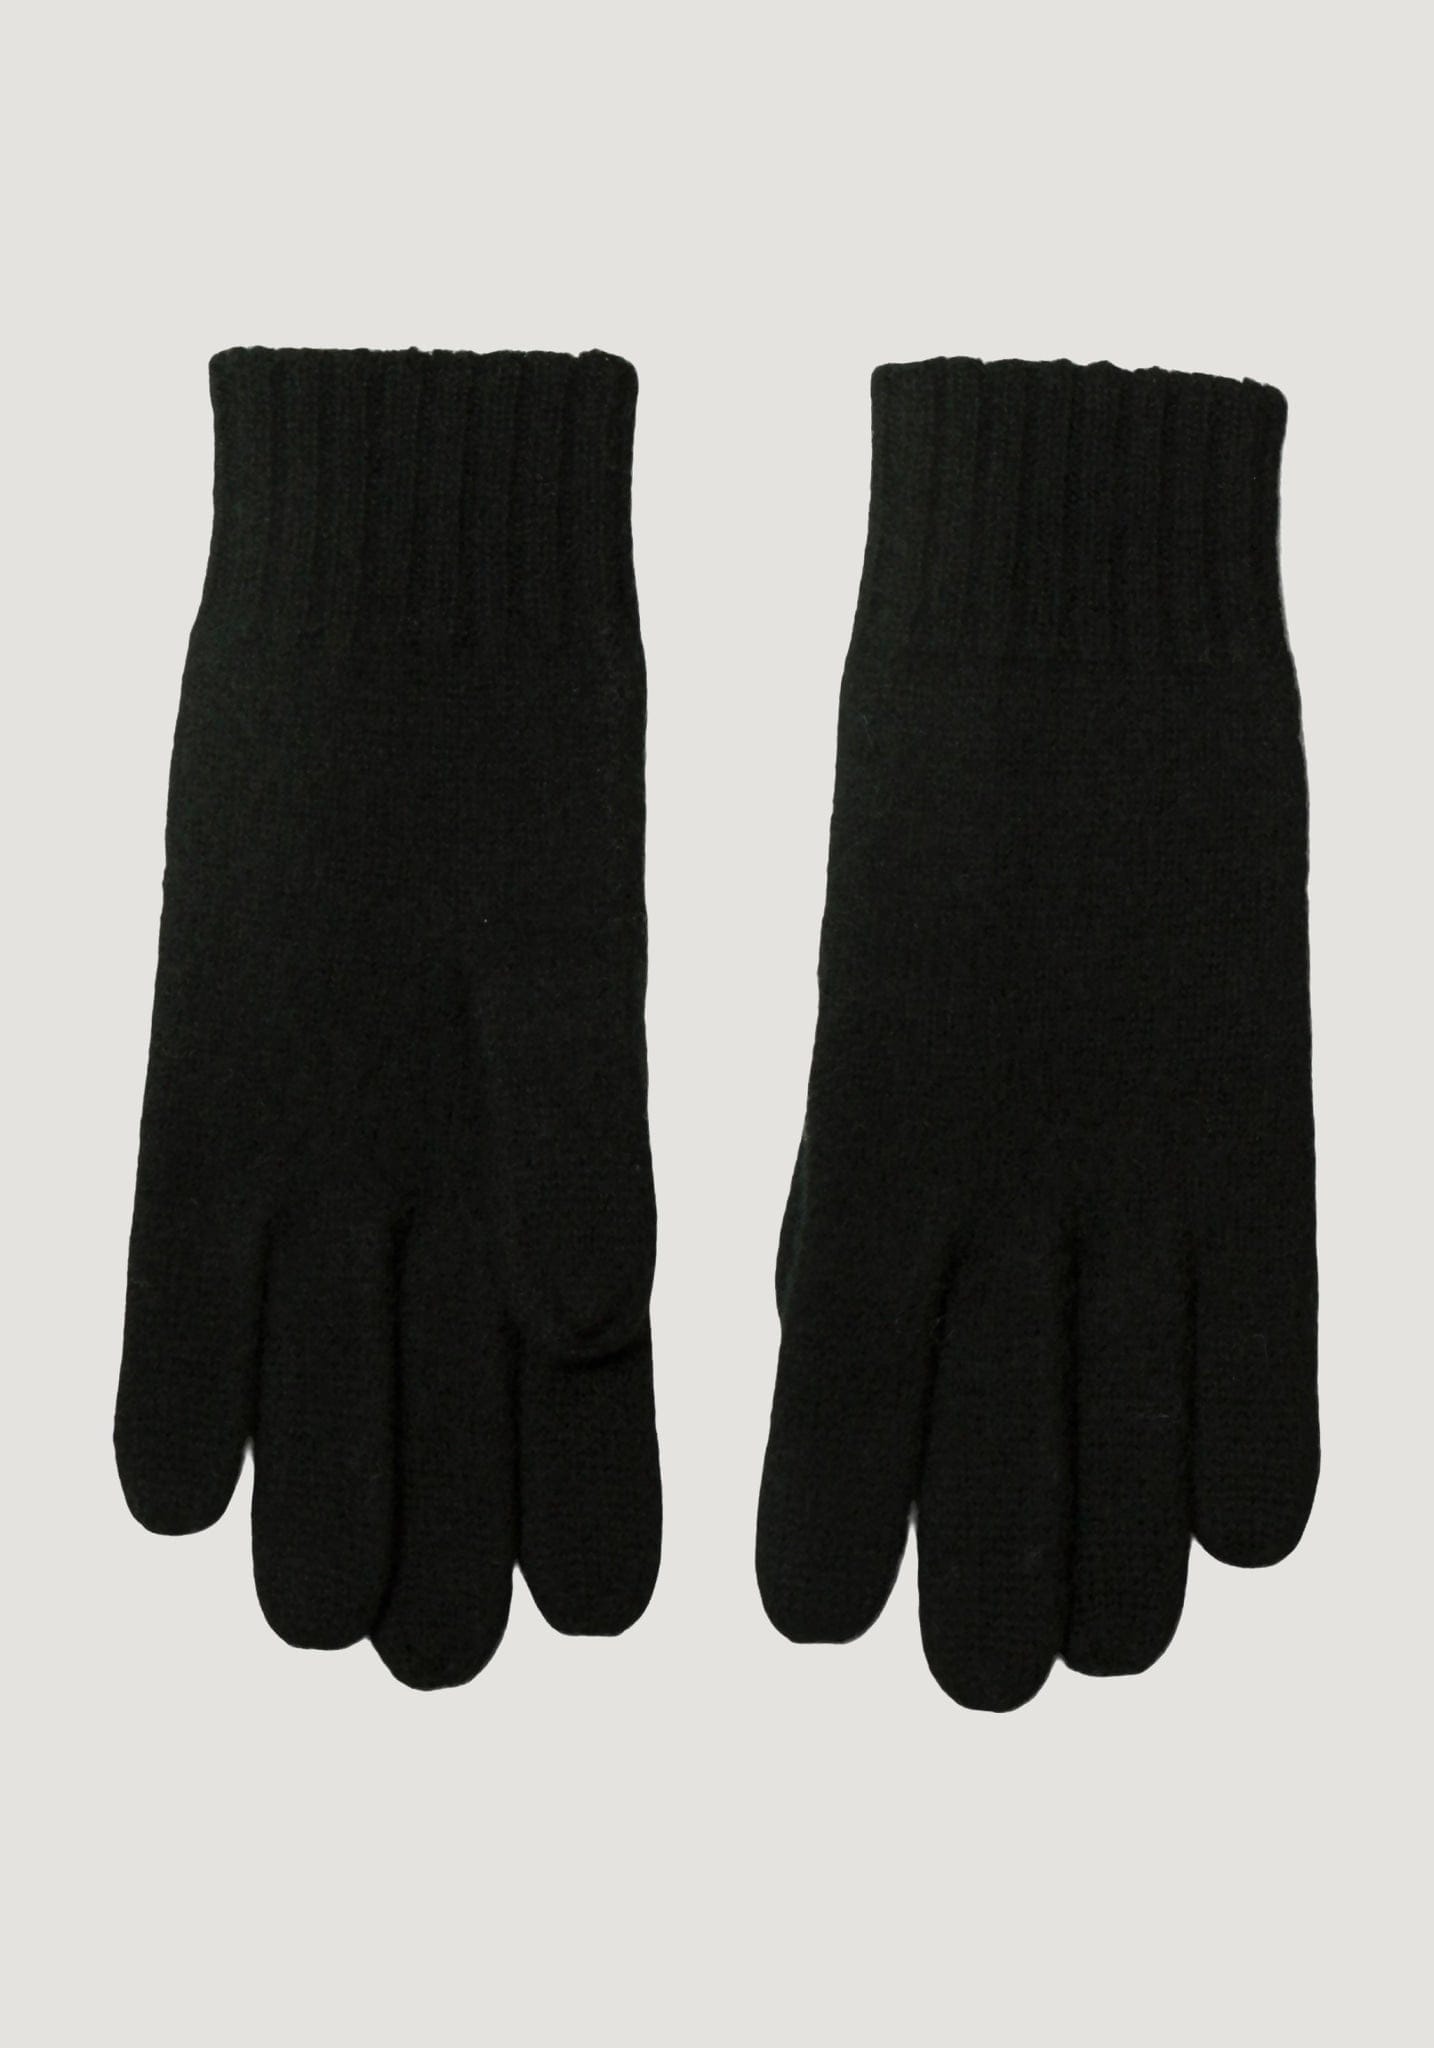 Mănuși bărbați din lână fiartă- Black Joha Man HipHip.ro